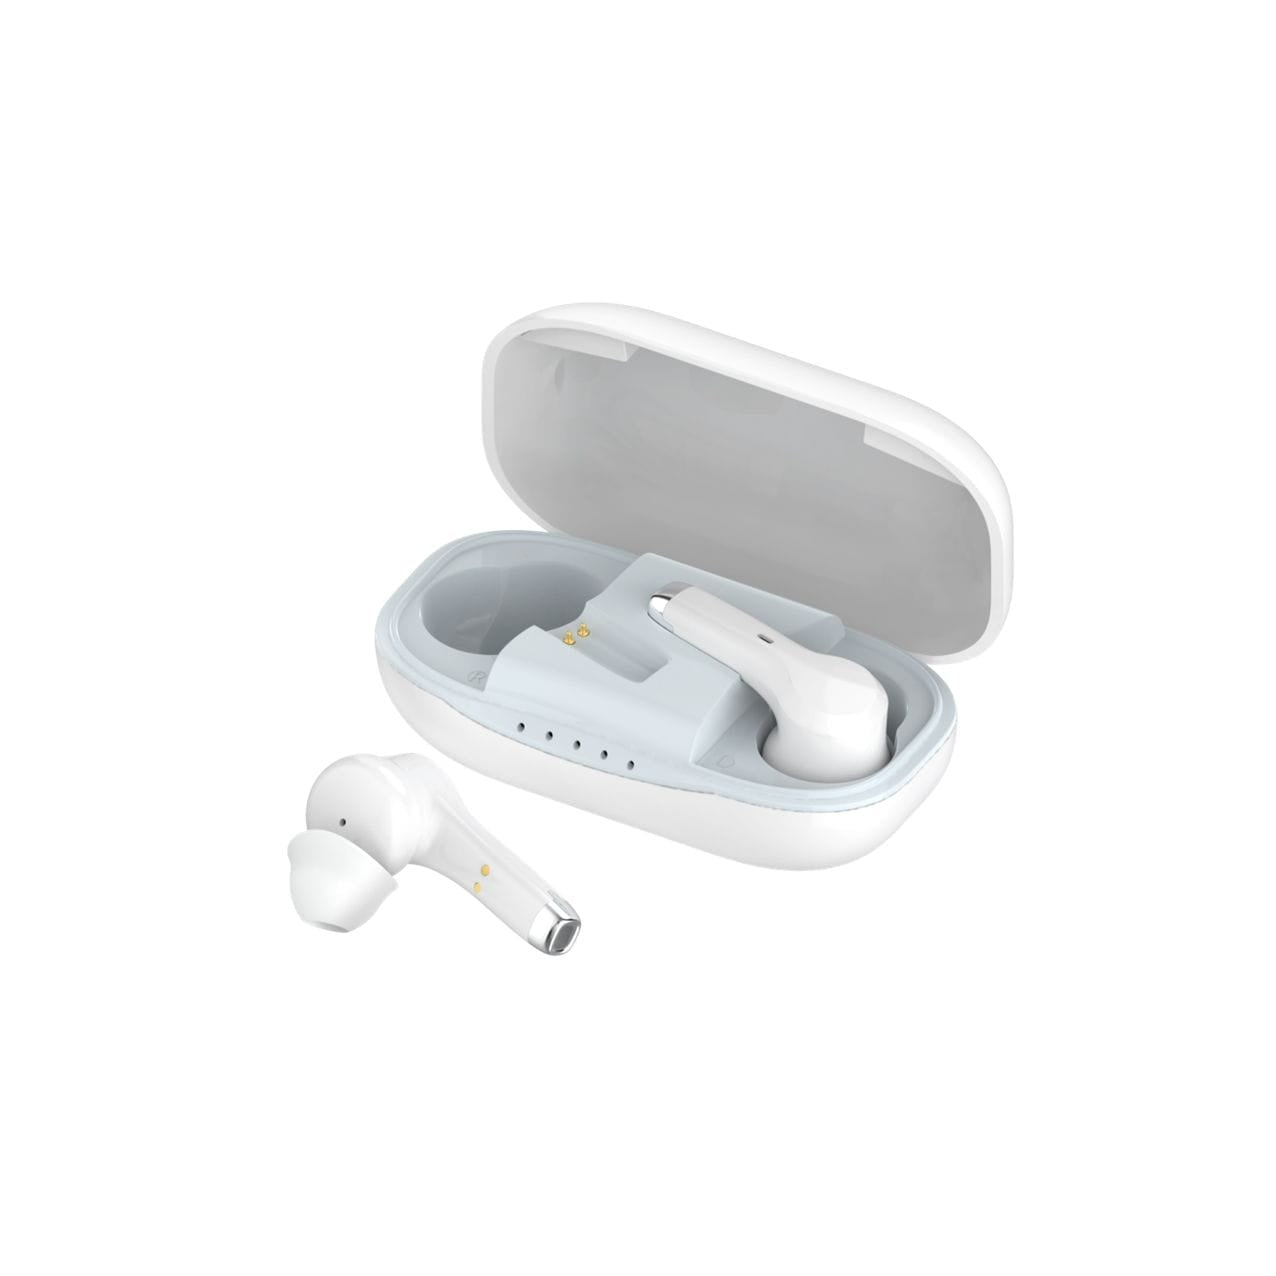 eEAR®-TWS-BT-001 Hörgeräte im Airpod-Stil, sehr diskret, sehen nicht wie typische Hörgeräte aus, sondern eher wie modische Airpods Bluetooth, wie sie von allen großen Mobiltelefonmarken geliefert werden